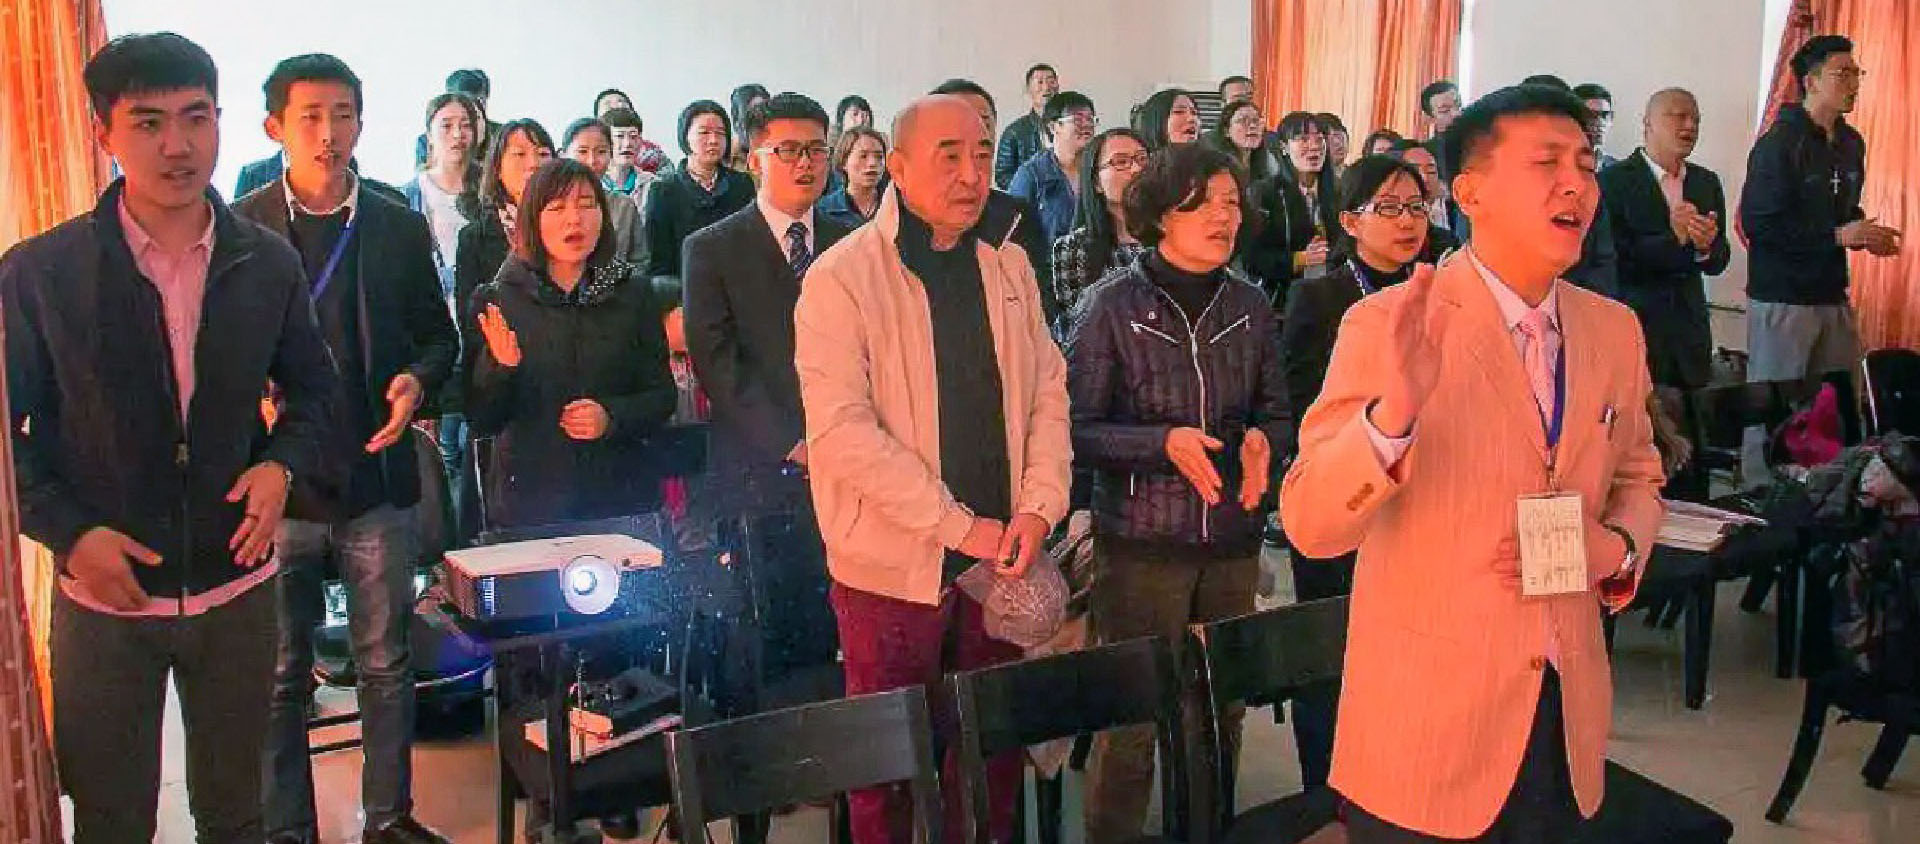 Les membres d’une Église de maison dans le district de Shunyi, à Pékin, durant un temps de prière | © wikiwand.com/Ucanews